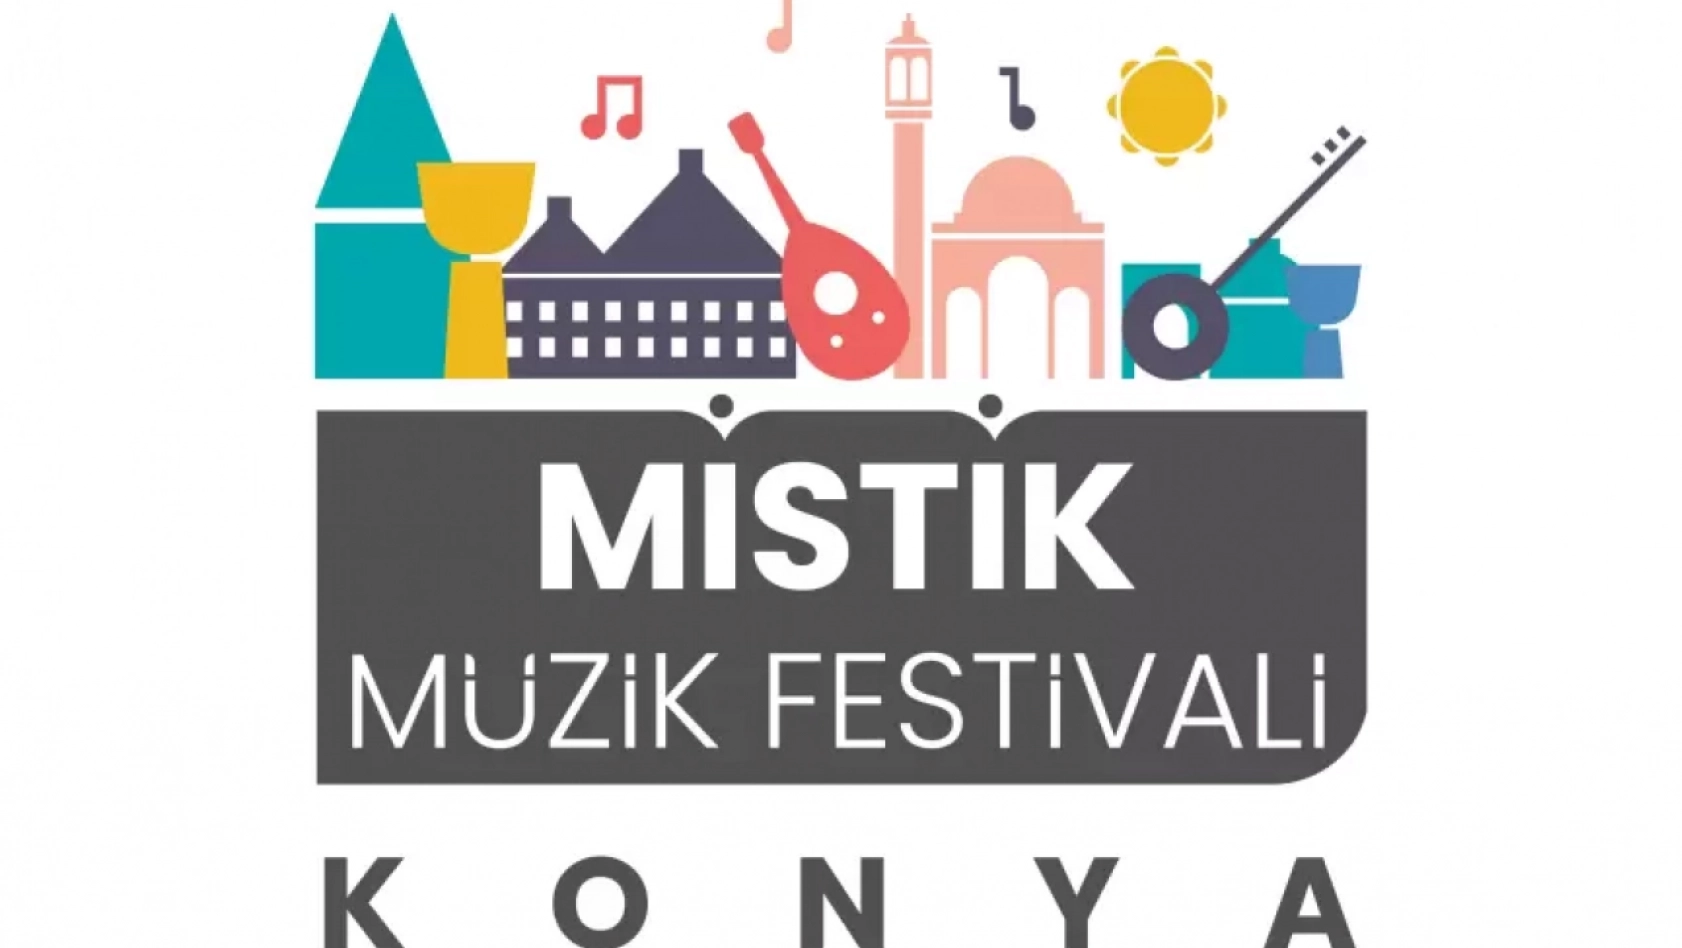 Konya'da Mistik Müzik Festivali  Bugün Başlıyor